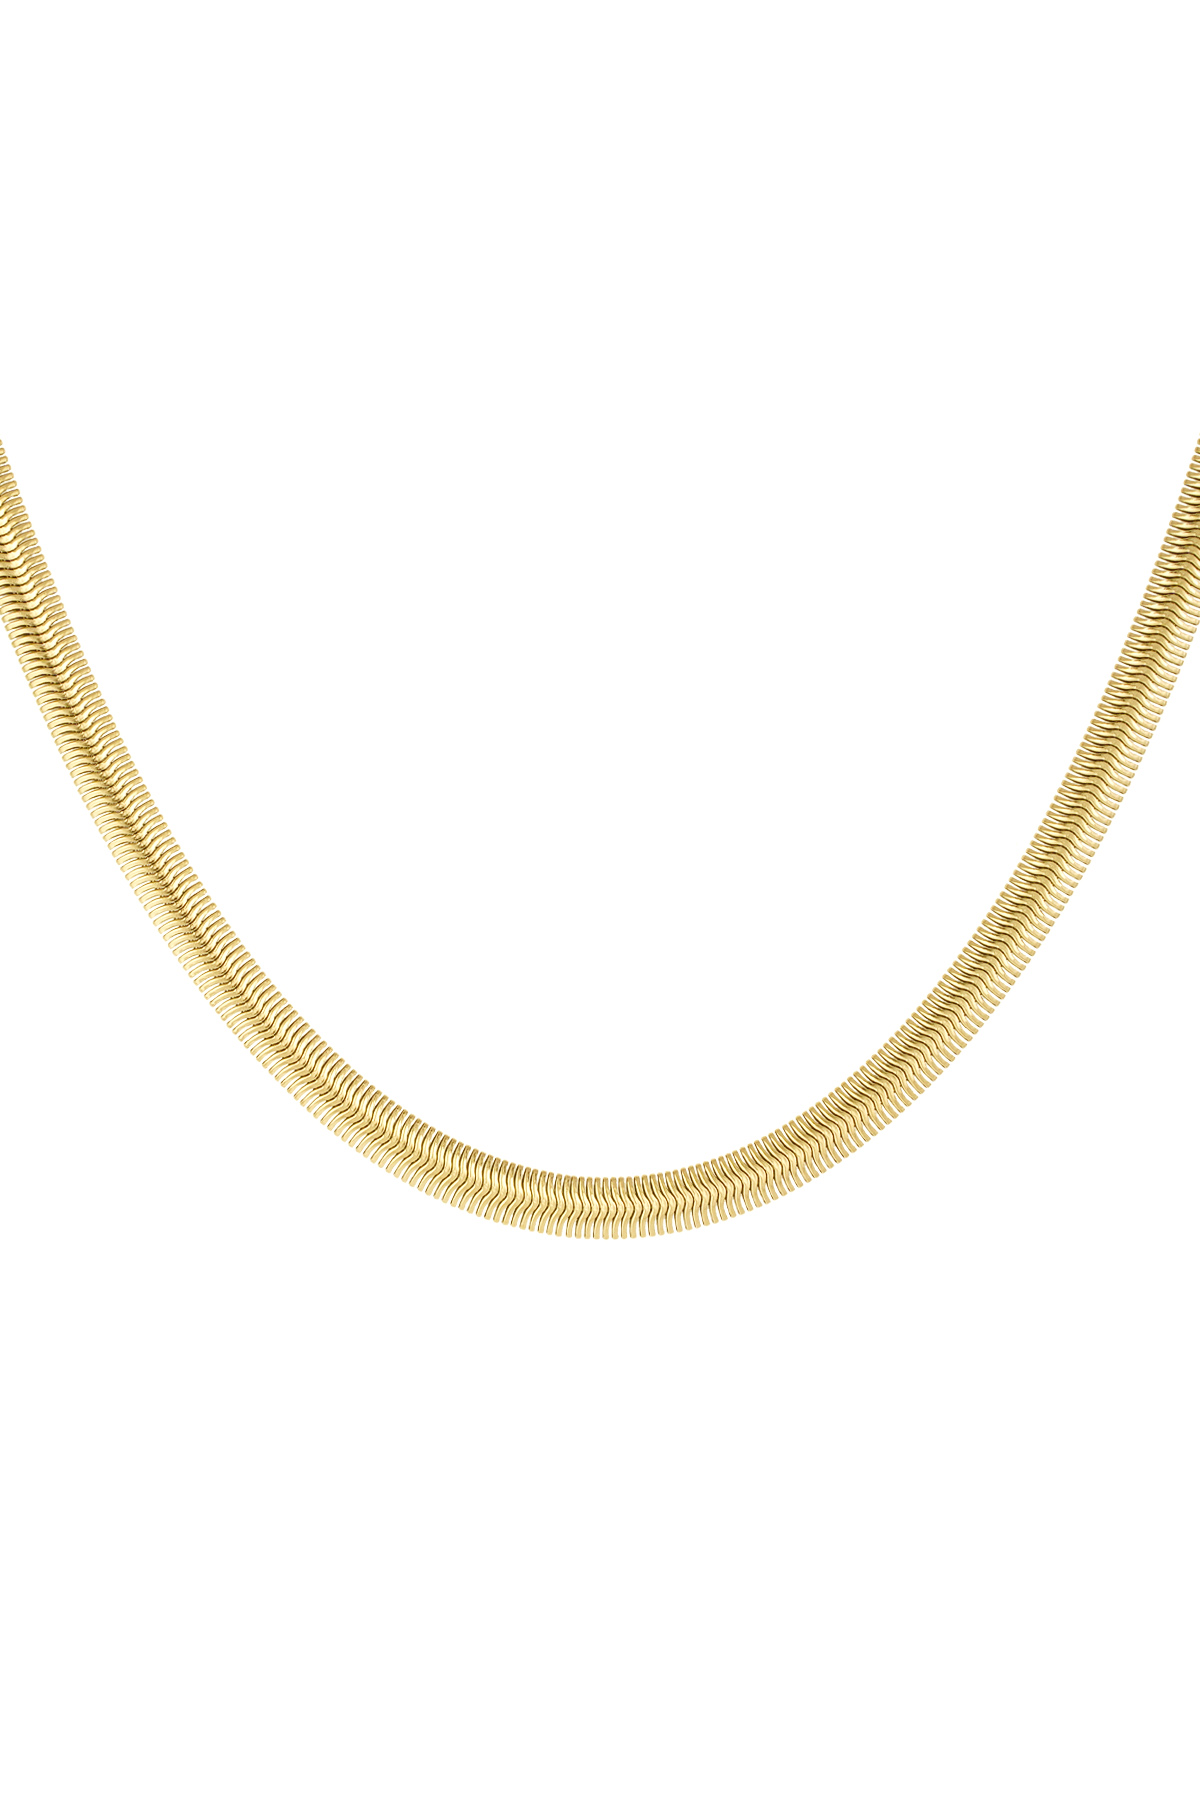 Halskette flach mit Aufdruck - gold-6.0MM h5 